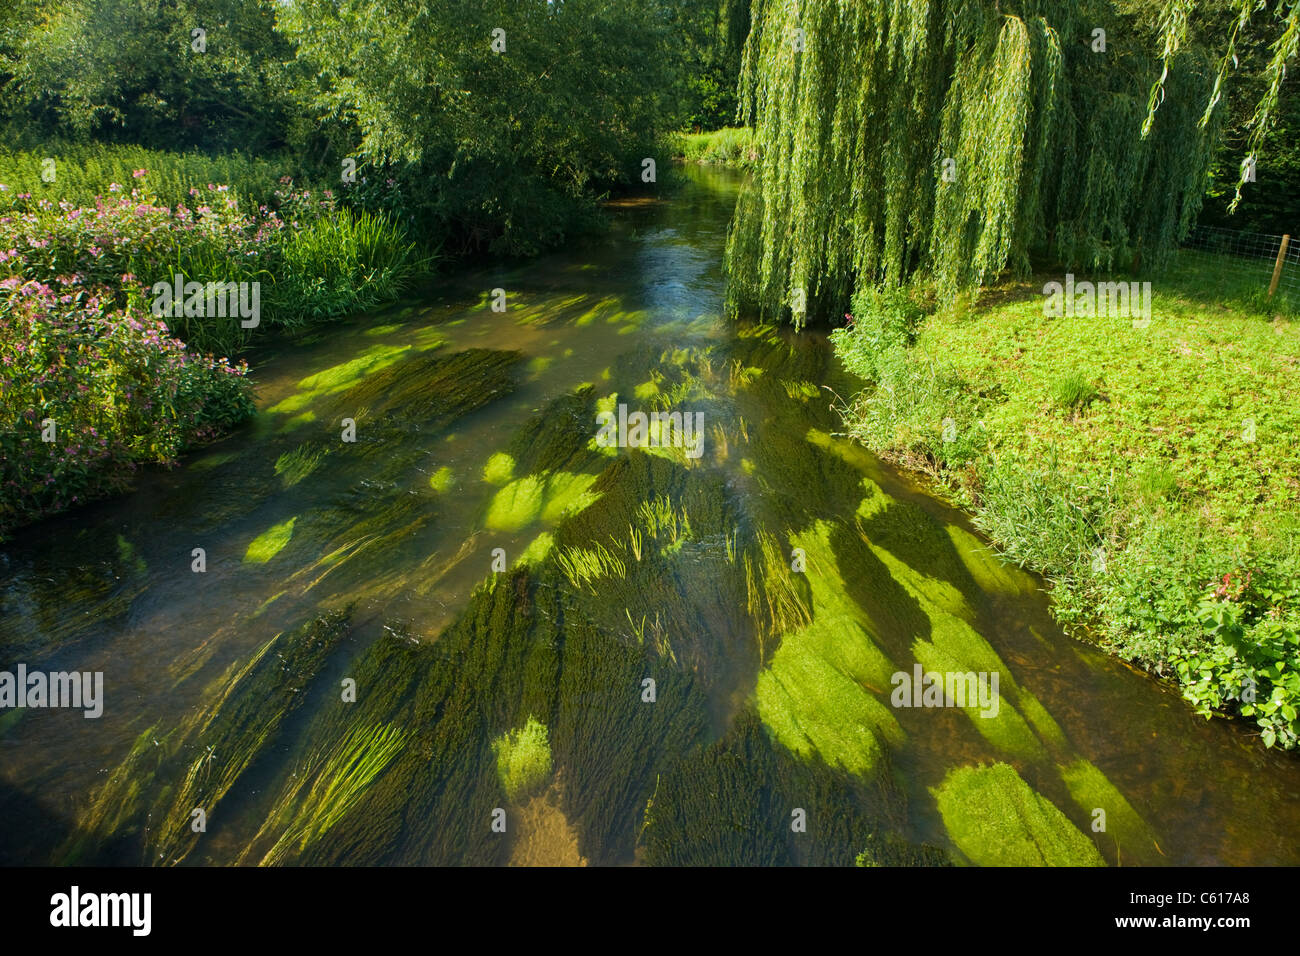 La croissance dynamique dans la rivière Wey à Elstead, Surrey, UK. Banque D'Images